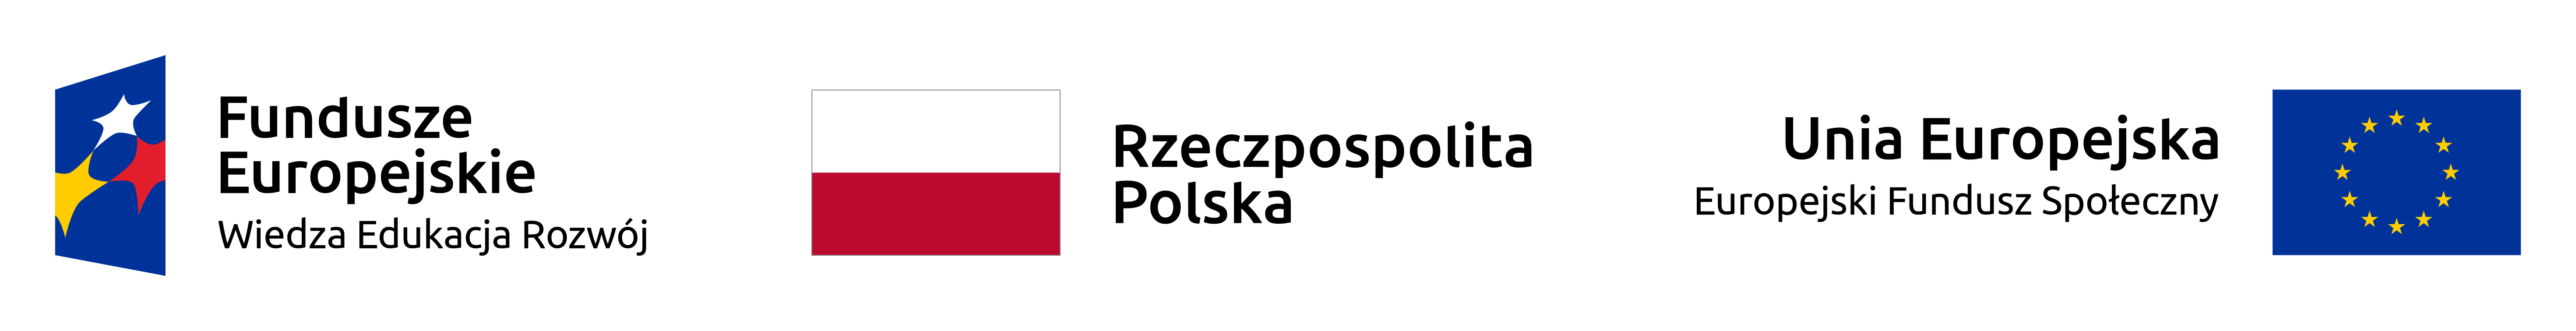 Grafika przedstawia logotyp Funduszy Europejskich, flagę Polski oraz Unii Europejskiej.